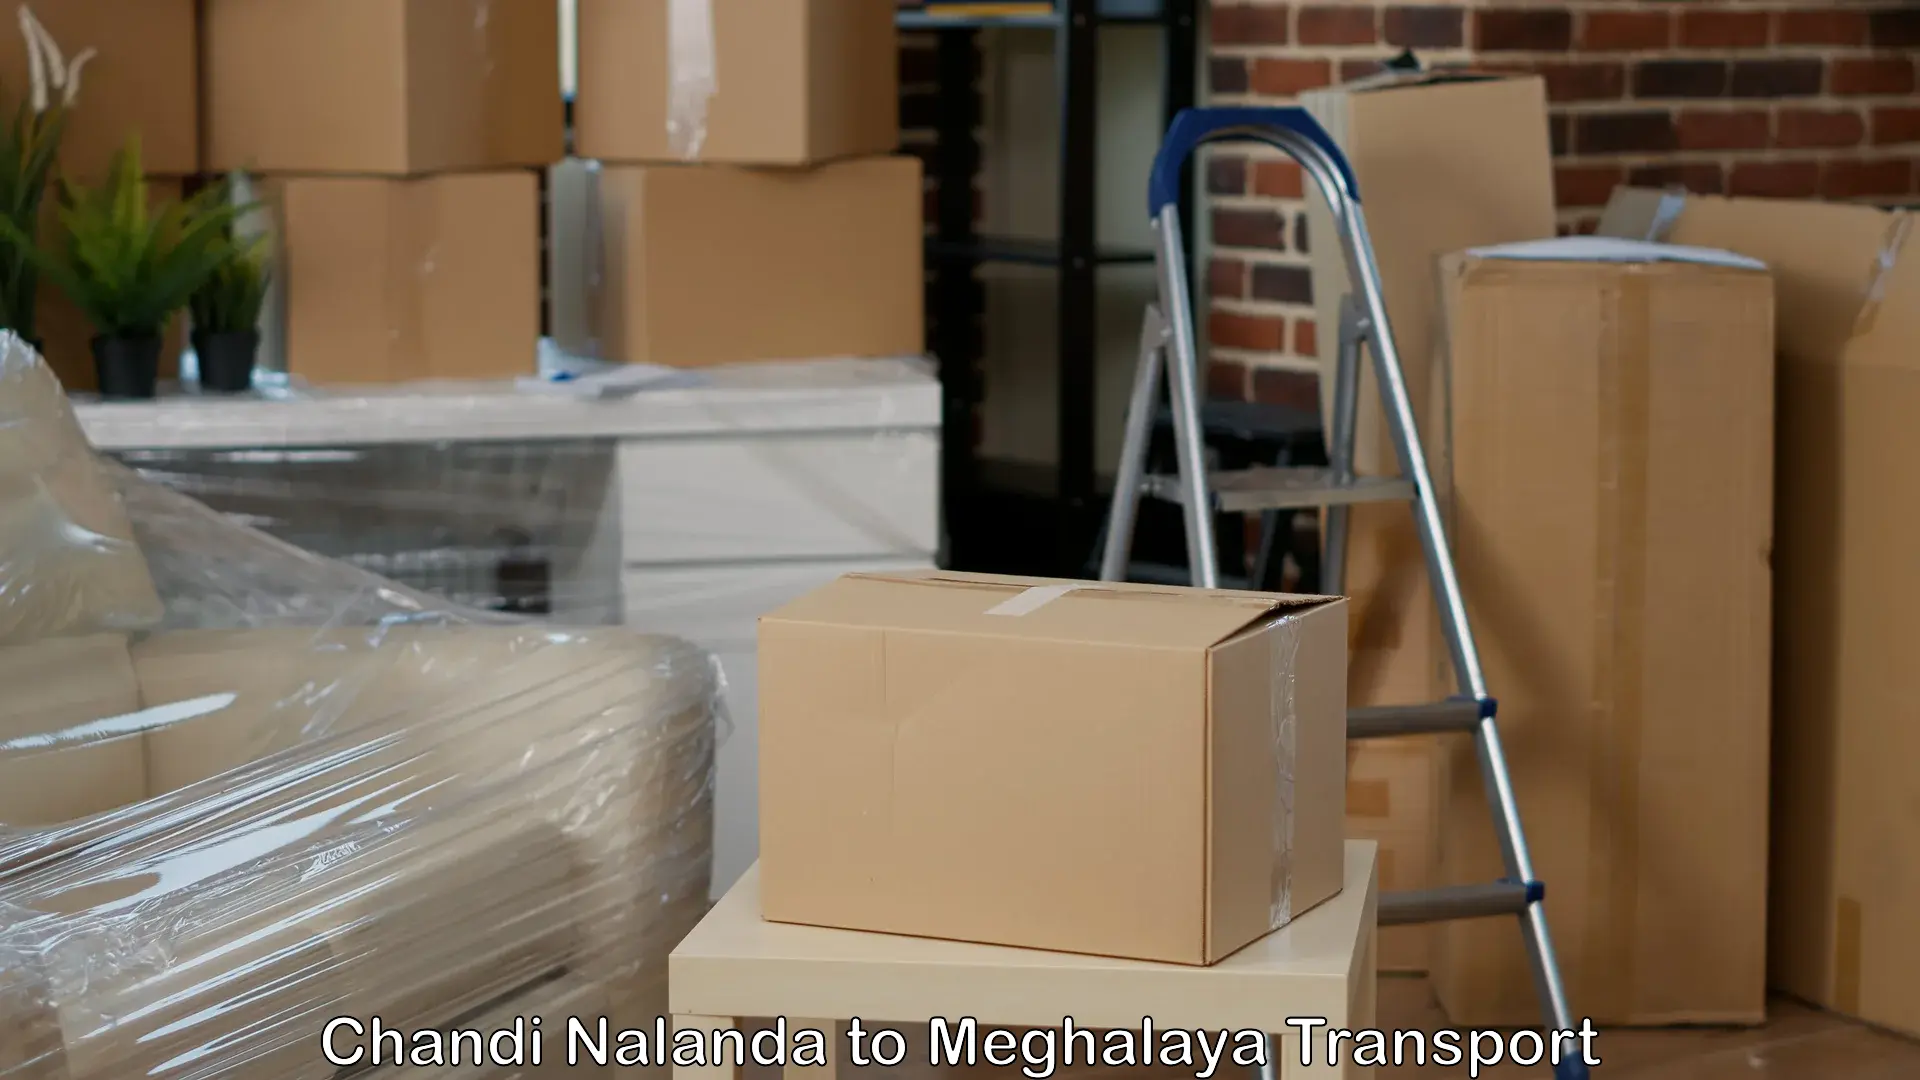 Bike transport service Chandi Nalanda to Meghalaya